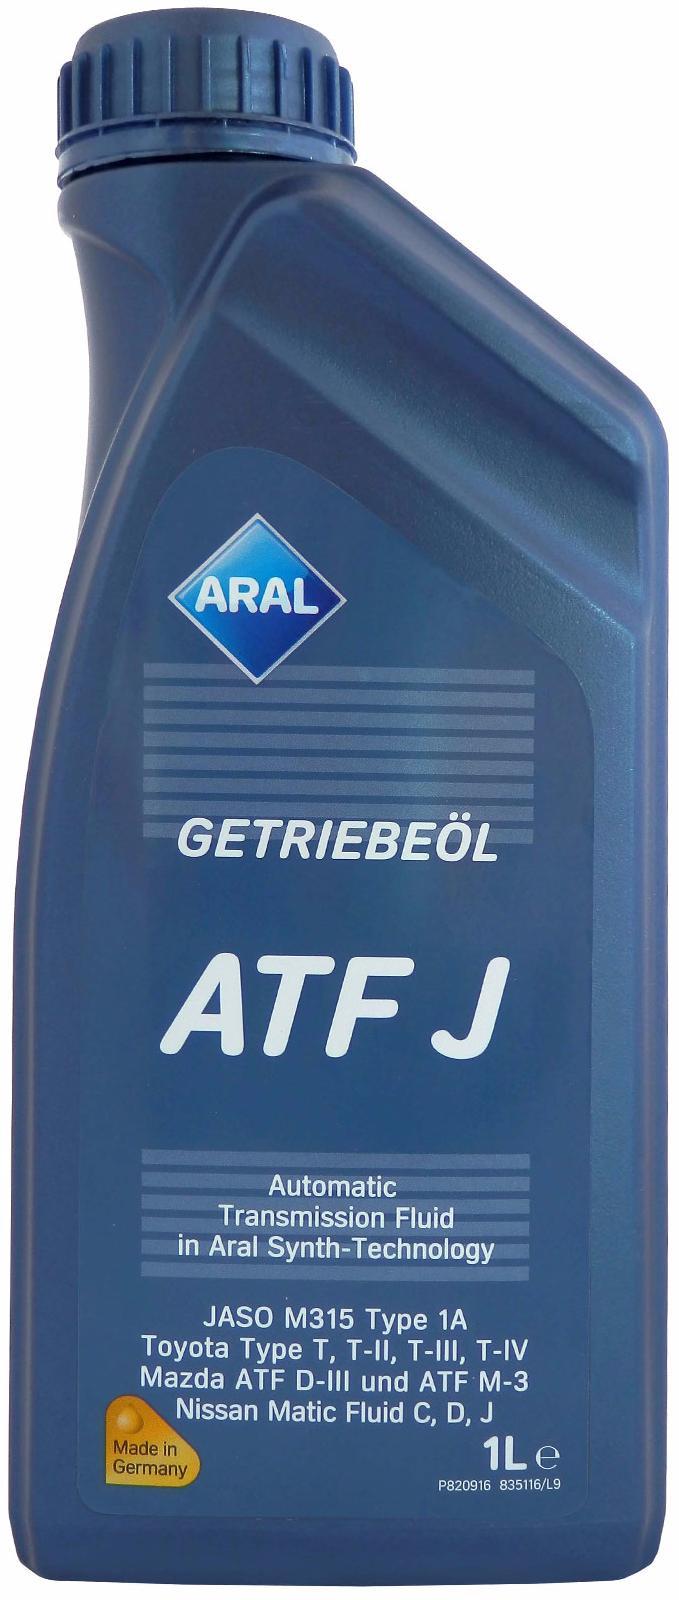 Масло трансмиссионное синтетическое "Getriebeol ATF J", 1л